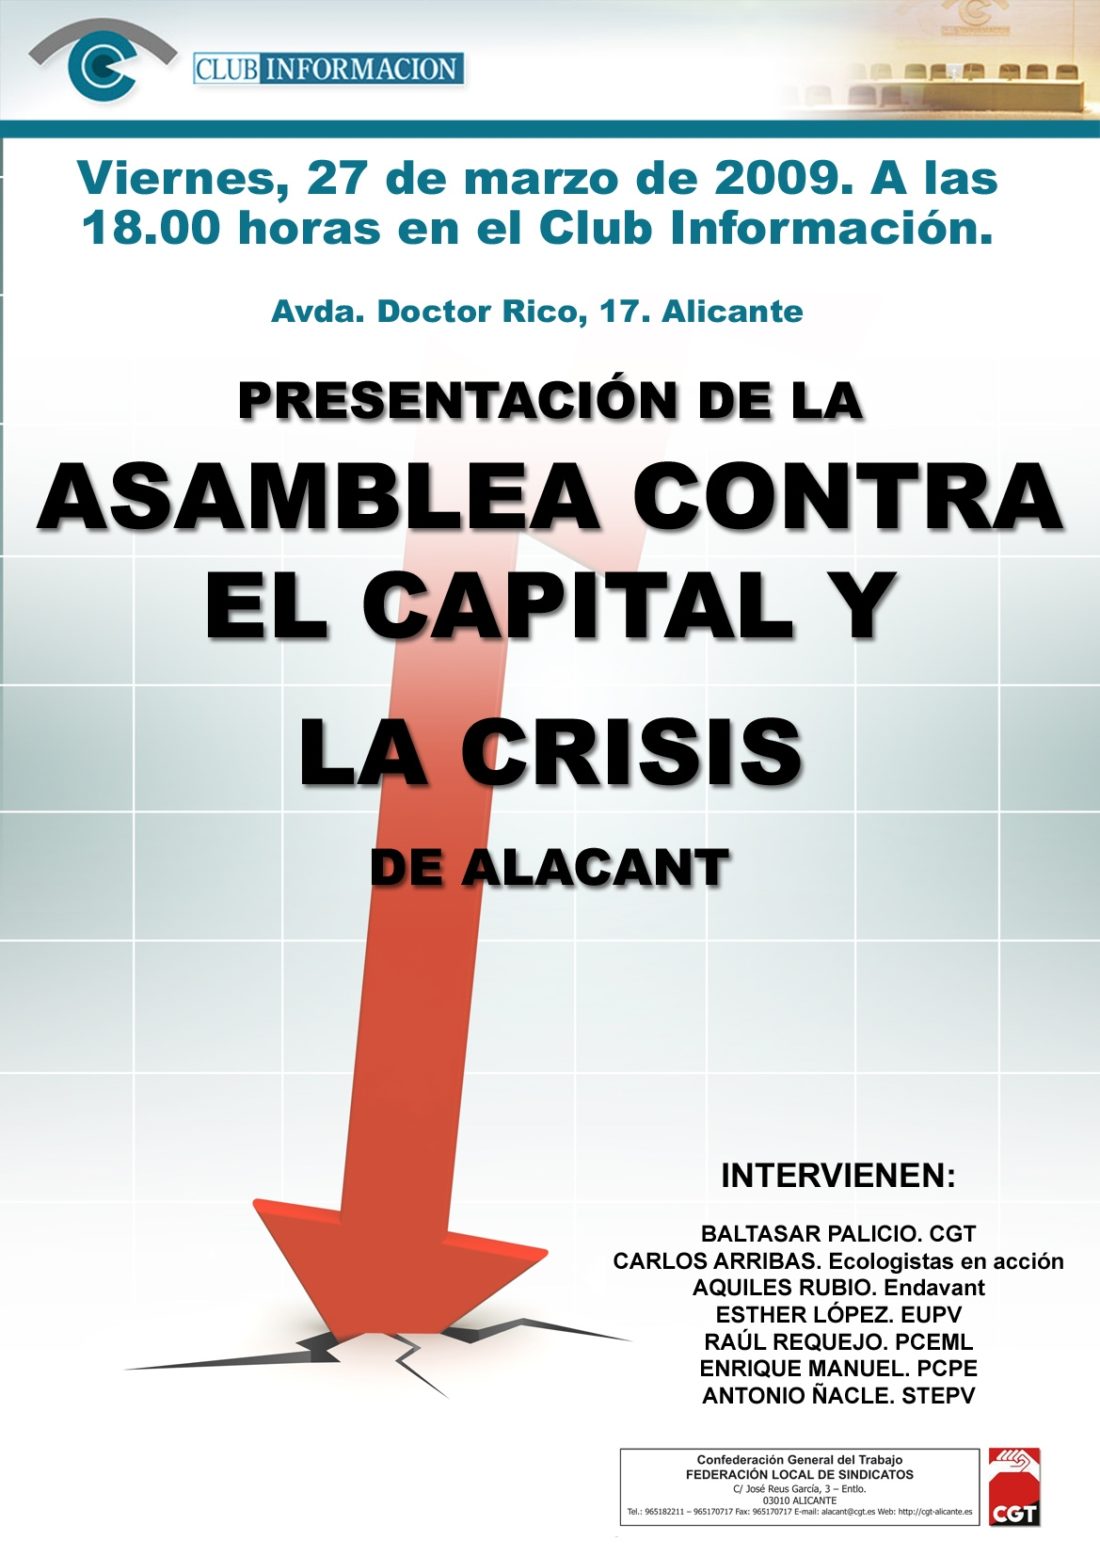 Alacant : ASAMBLEA EN EL CLUB INFORMACIÓN Viernes 27 marzo 18 horas